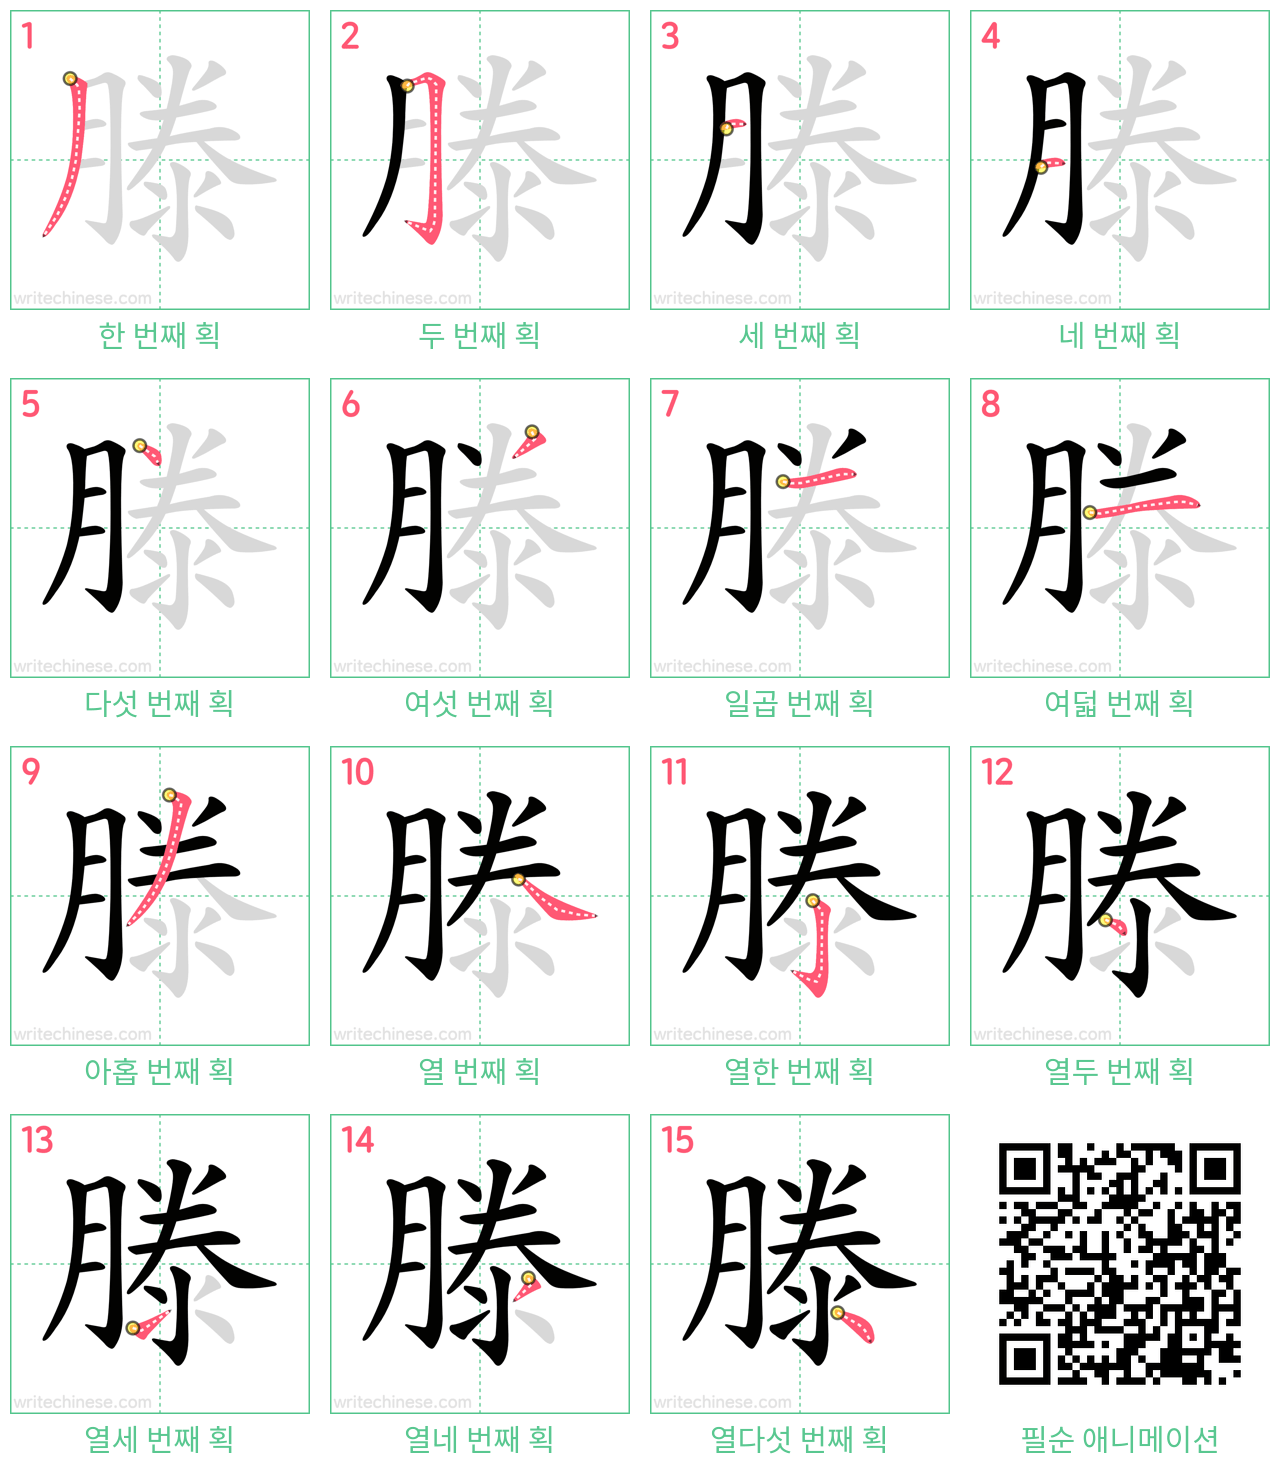 滕 step-by-step stroke order diagrams